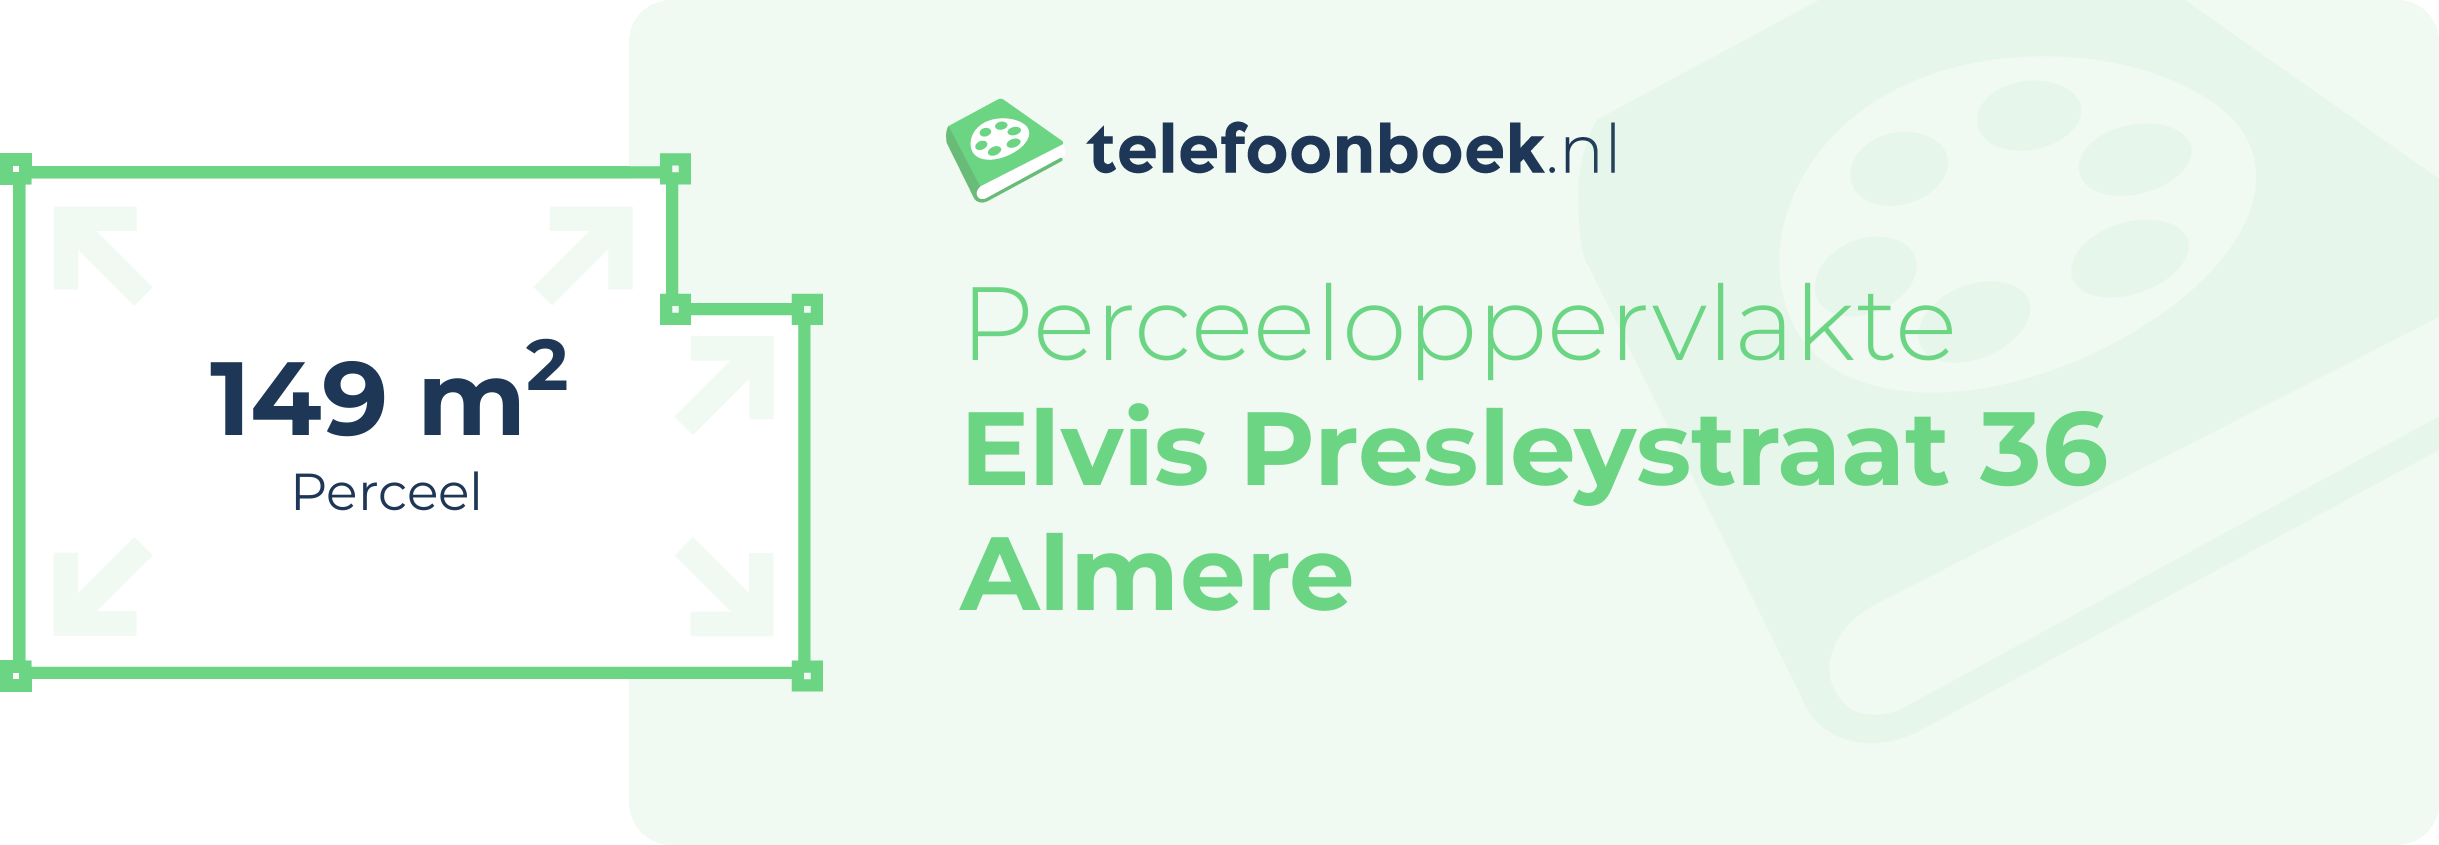 Perceeloppervlakte Elvis Presleystraat 36 Almere